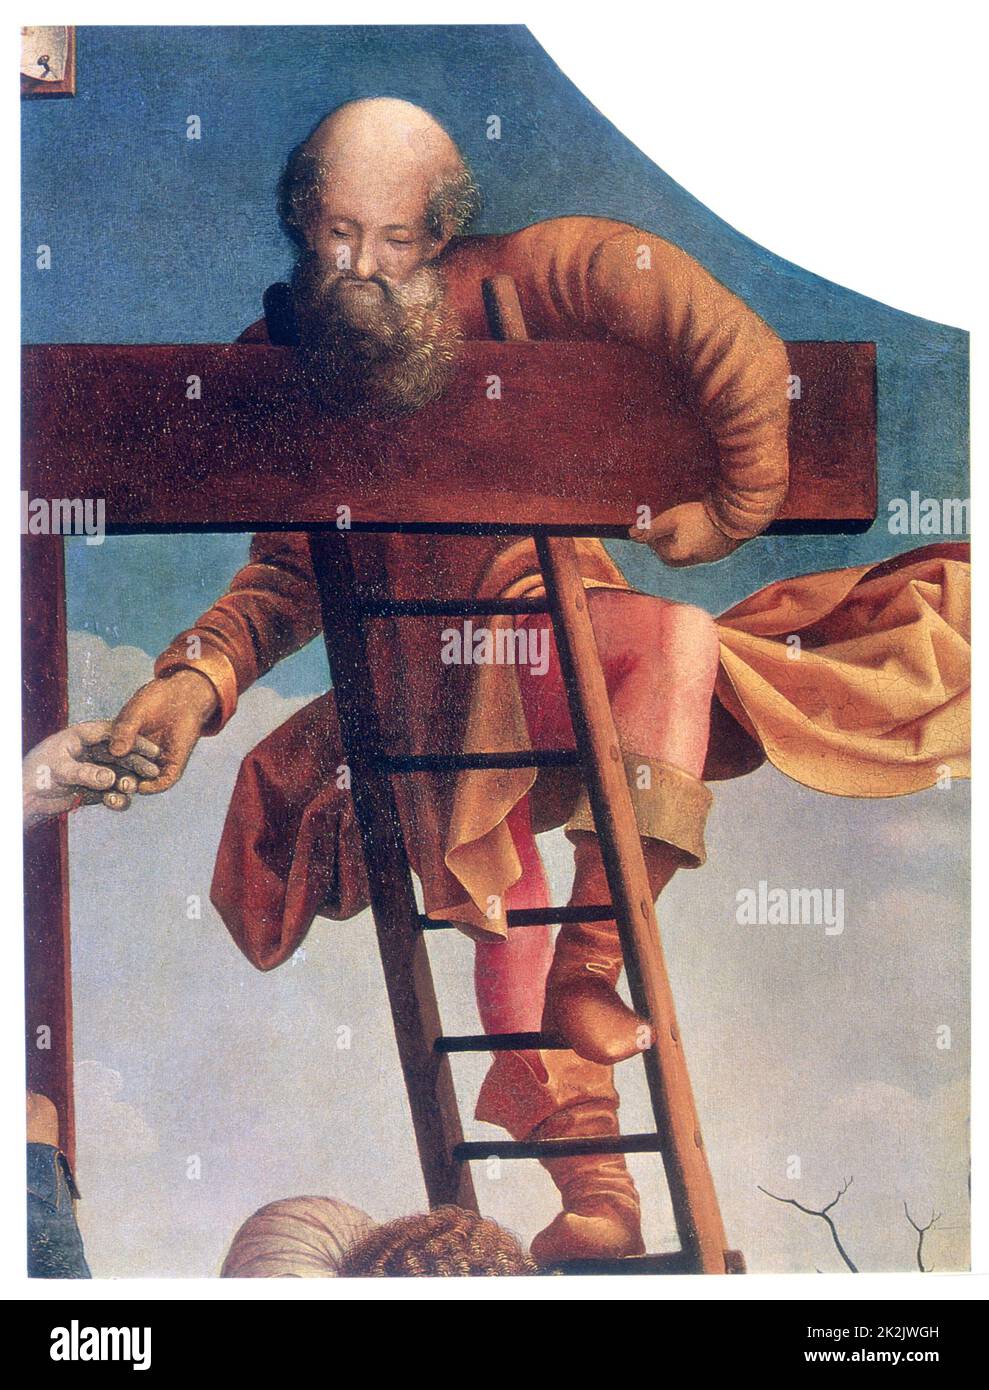 Jan Gossaert, connu sous le nom d'école néerlandaise de Mabuse Descent de la Croix (détail de la partie supérieure droite) c.1520 huile sur toile (141 x 106,5 cm) Saint-Pétersbourg, Musée de l'Ermitage Banque D'Images